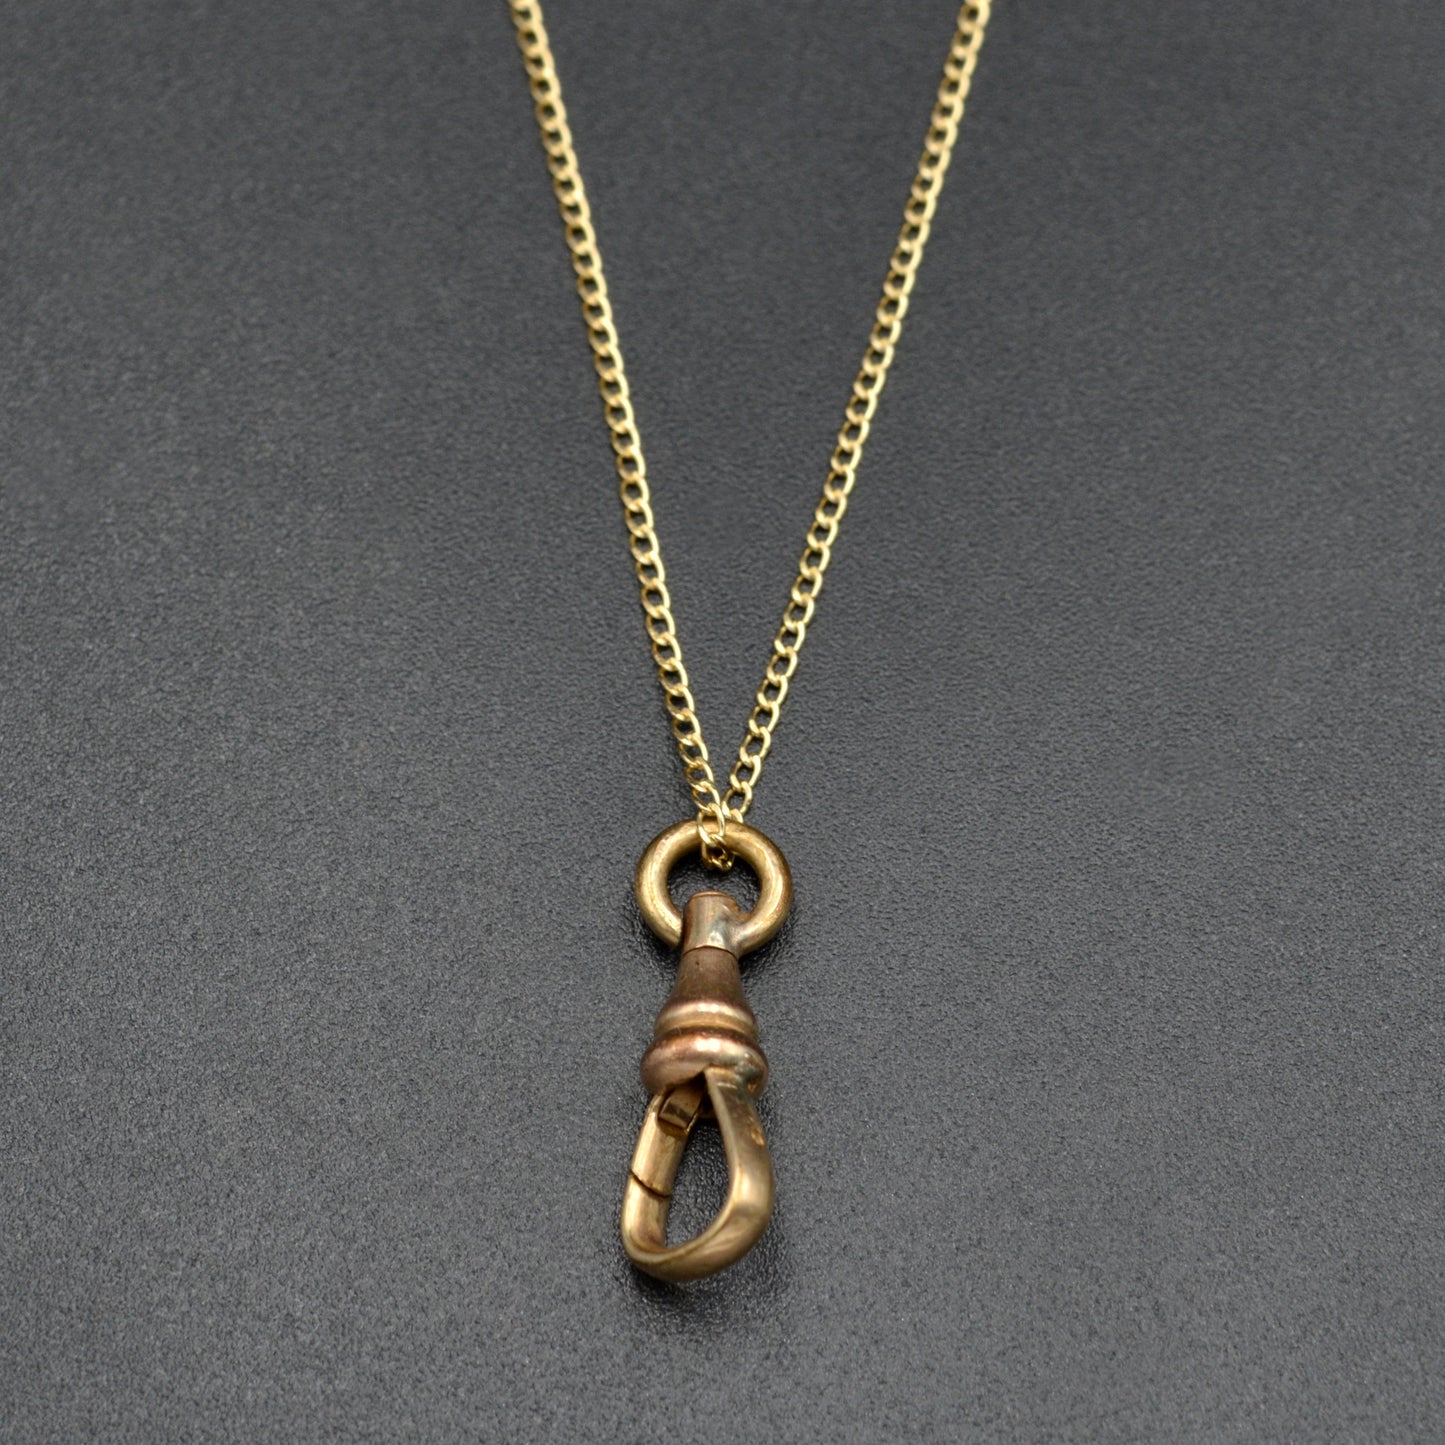 Antique Gold Filled Dog Clip Necklace